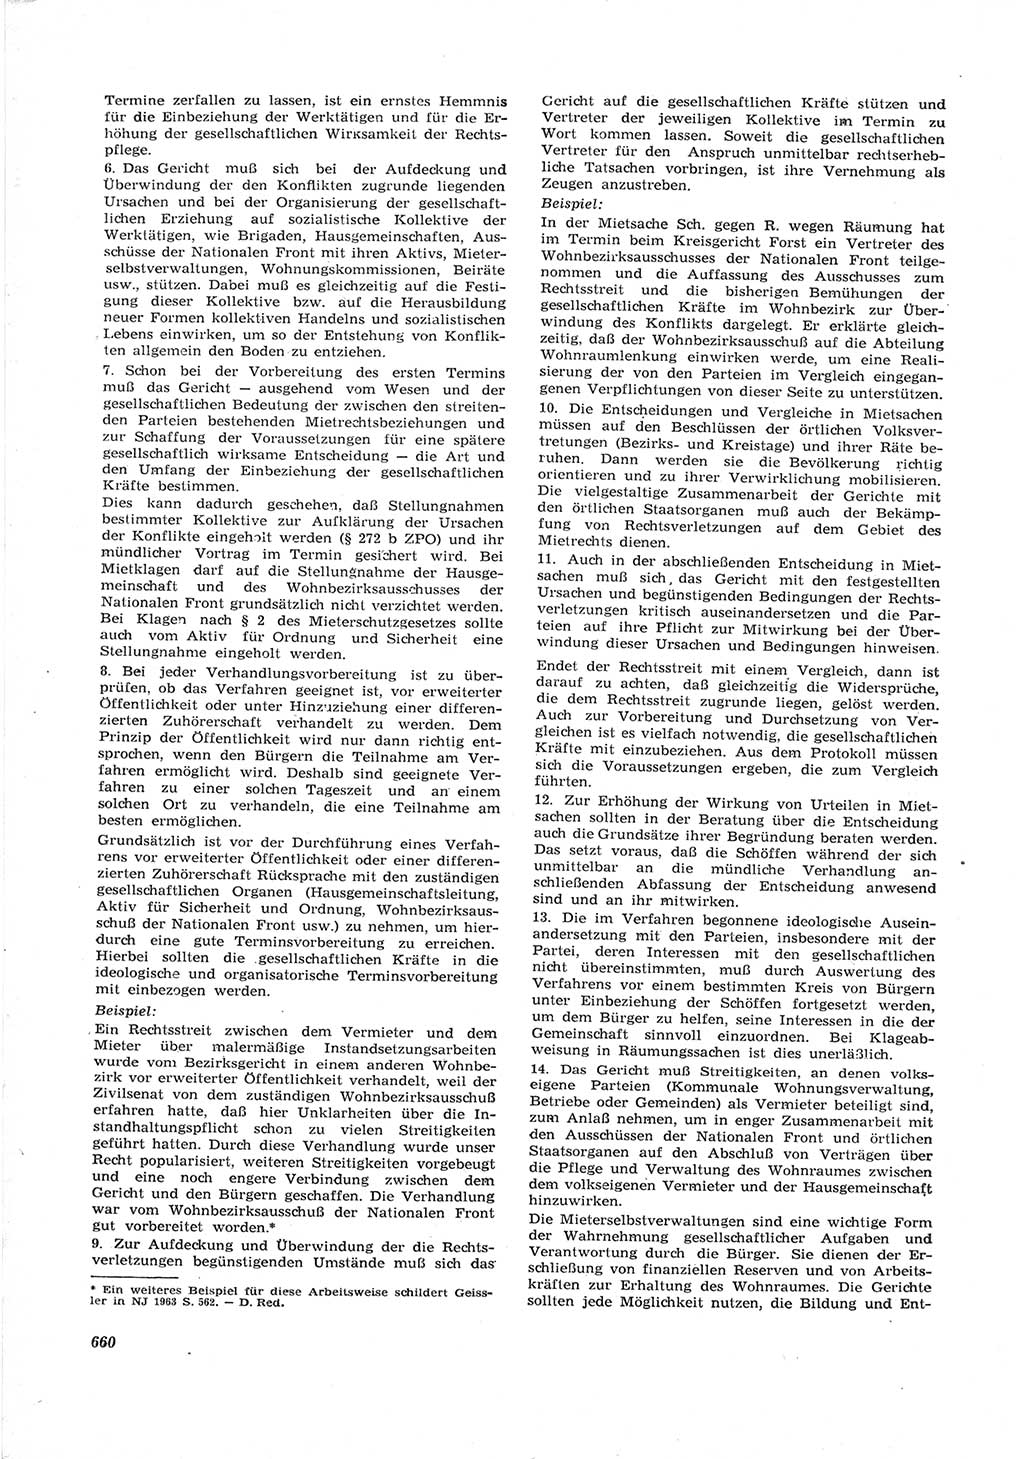 Neue Justiz (NJ), Zeitschrift für Recht und Rechtswissenschaft [Deutsche Demokratische Republik (DDR)], 17. Jahrgang 1963, Seite 660 (NJ DDR 1963, S. 660)